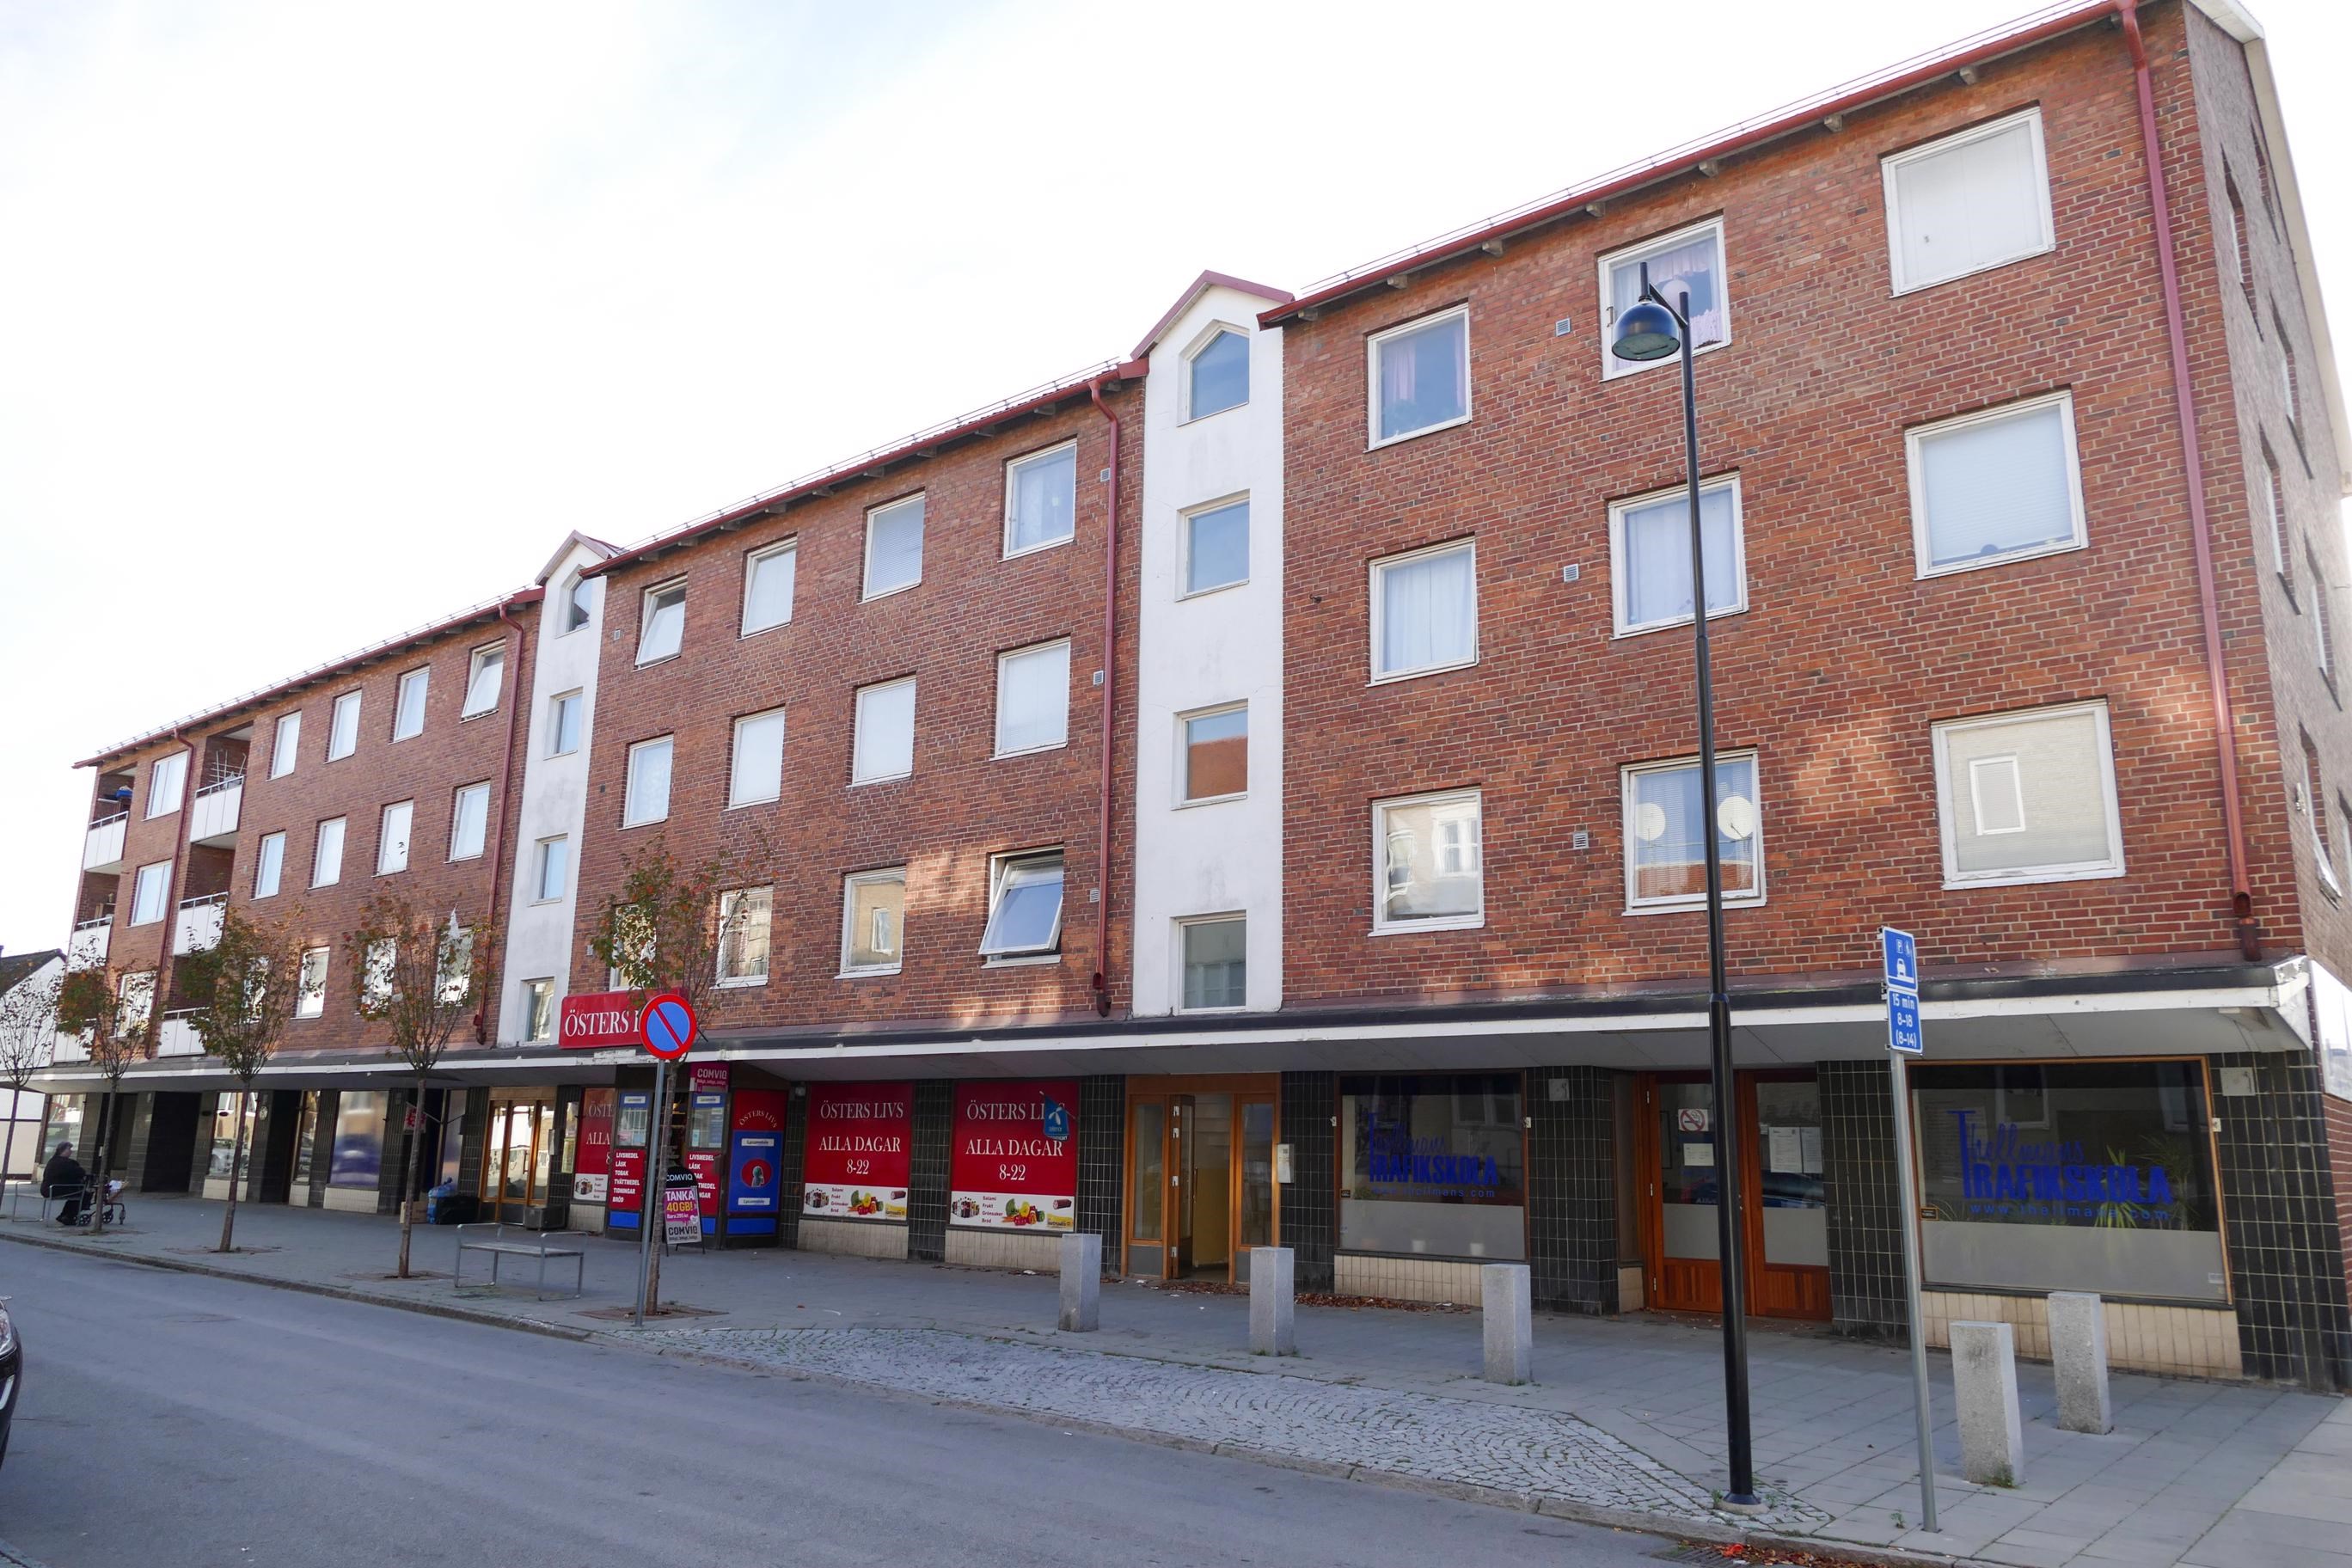 Lägenhet i Landskrona, Sverige, Östergatan 112 D